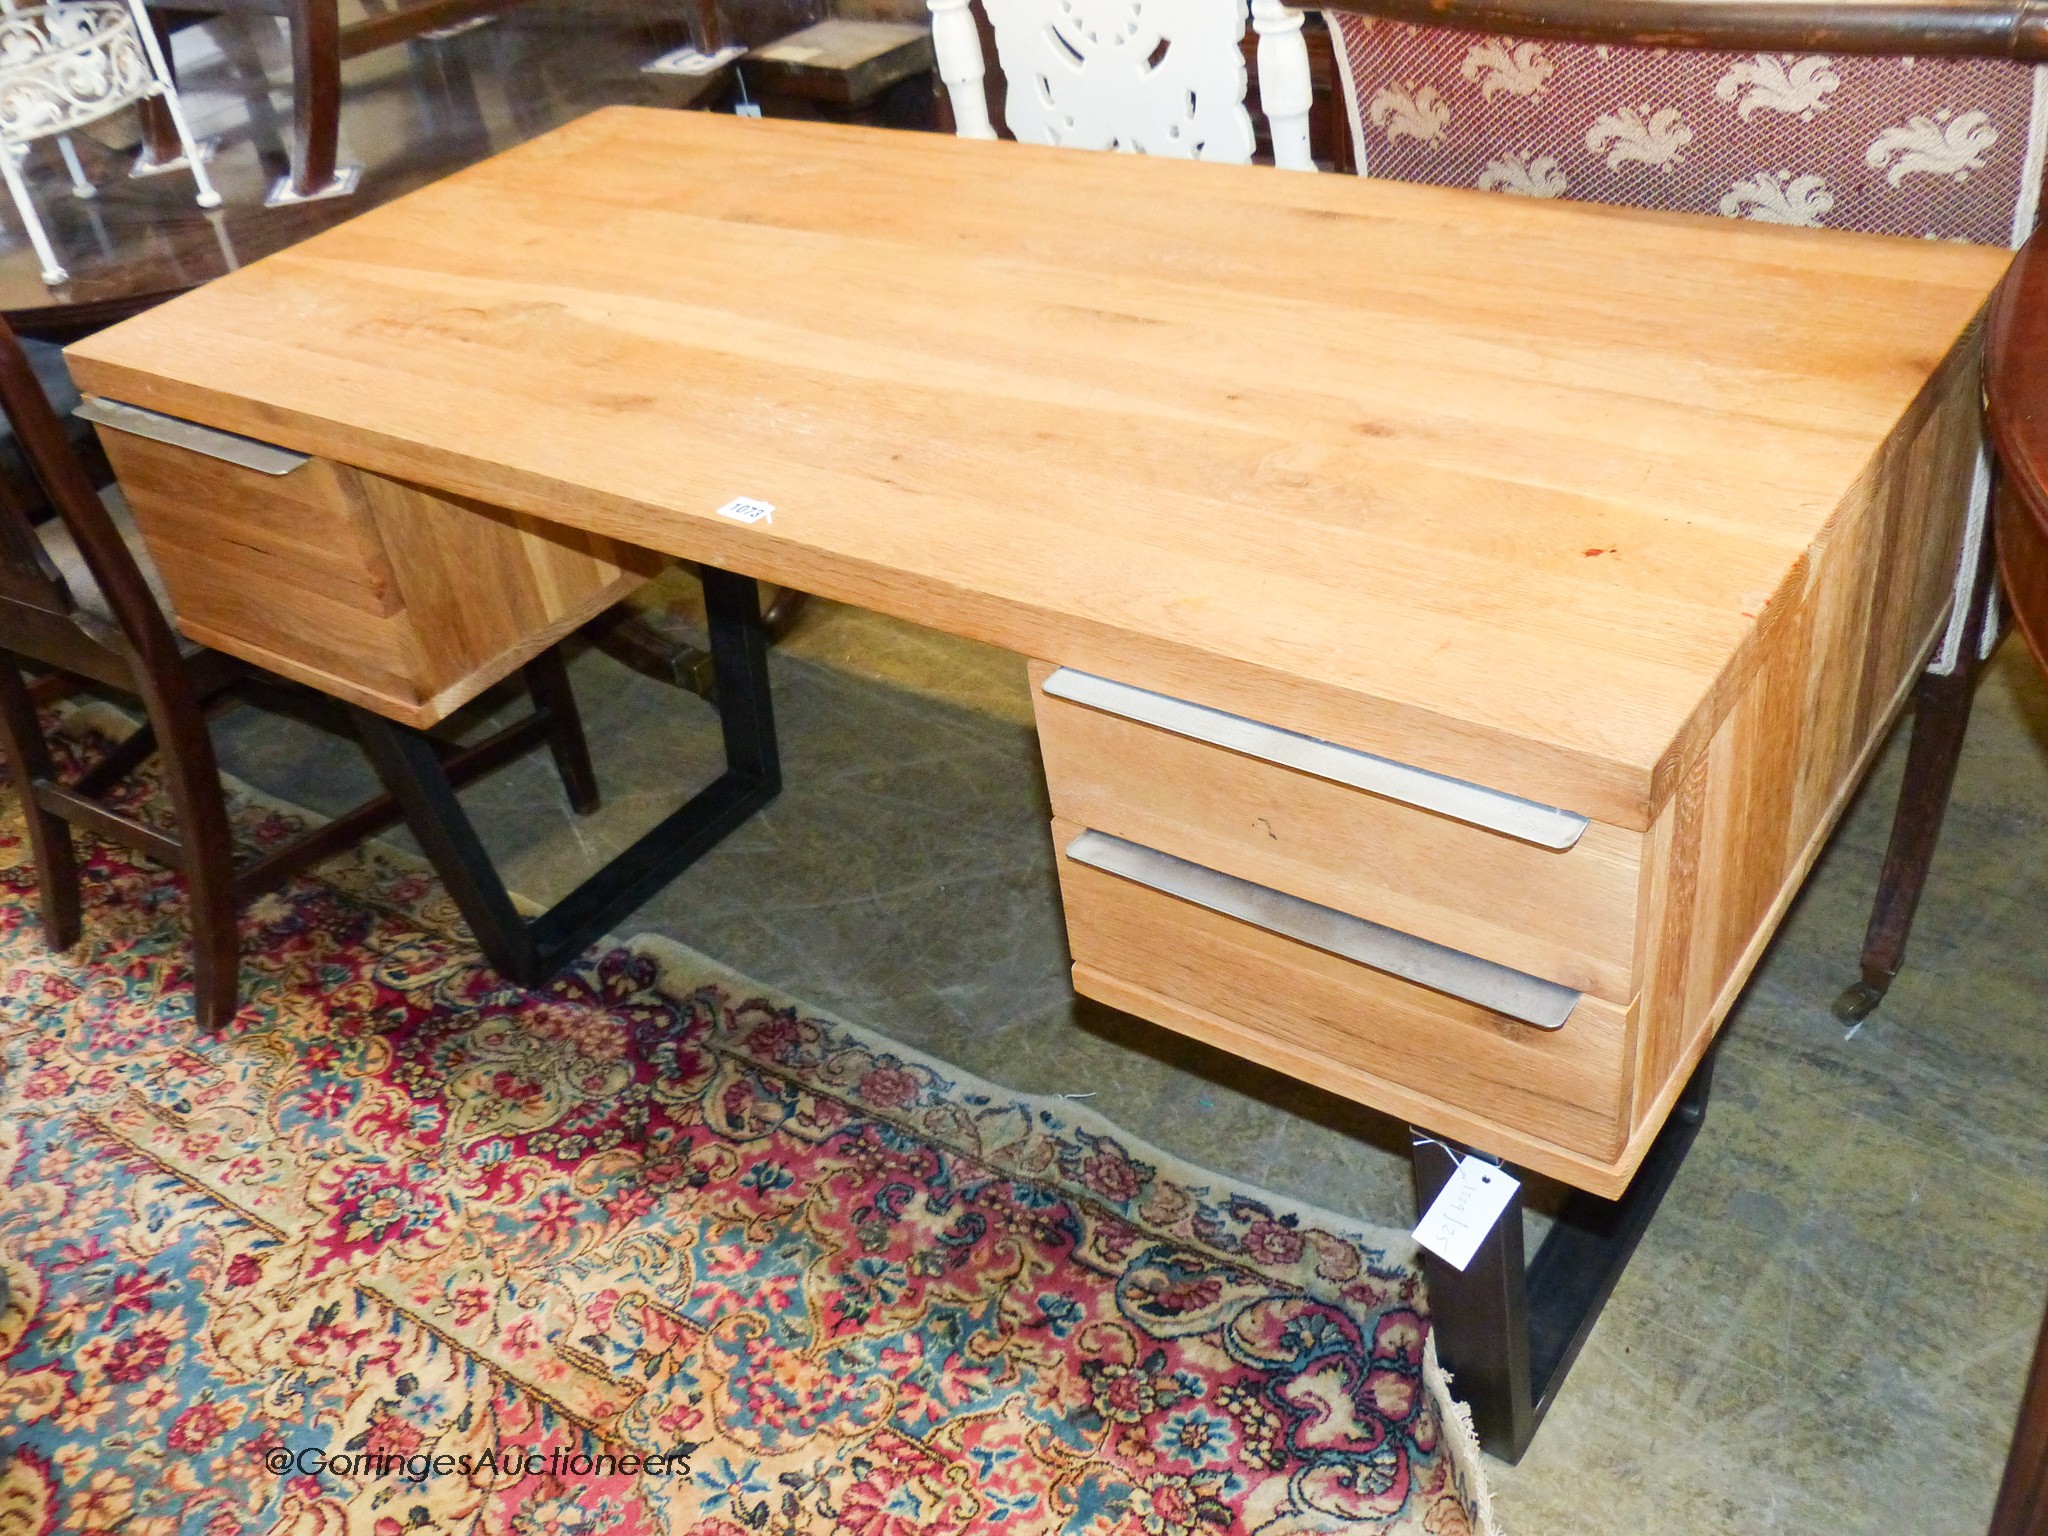 A contemporary black metal and oak kneehole desk, length 135cm, depth 65cm, height 76cm